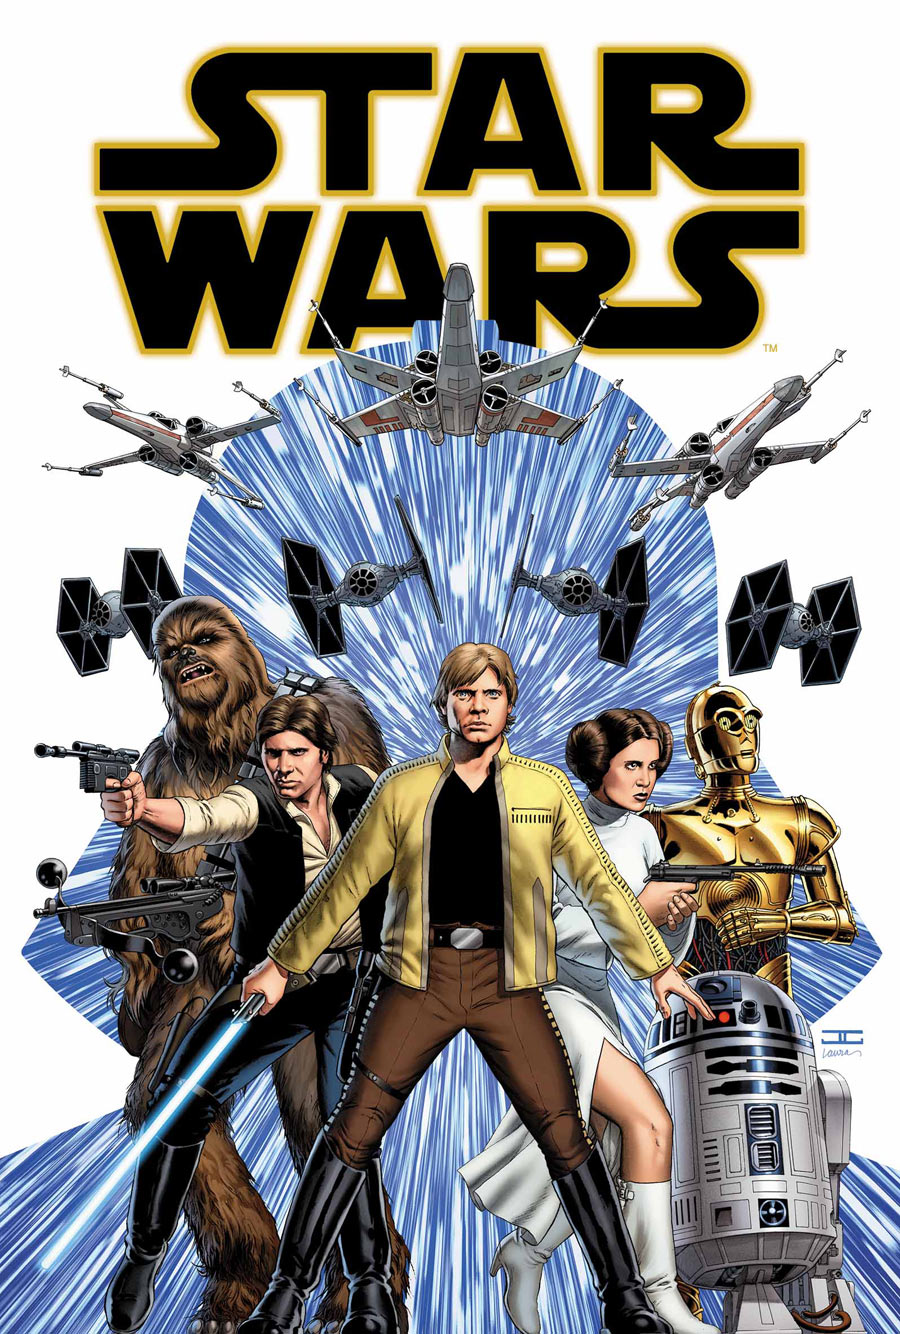 STAR WARS MARVEL COMICS 2015-2019 JUN171018 #35 